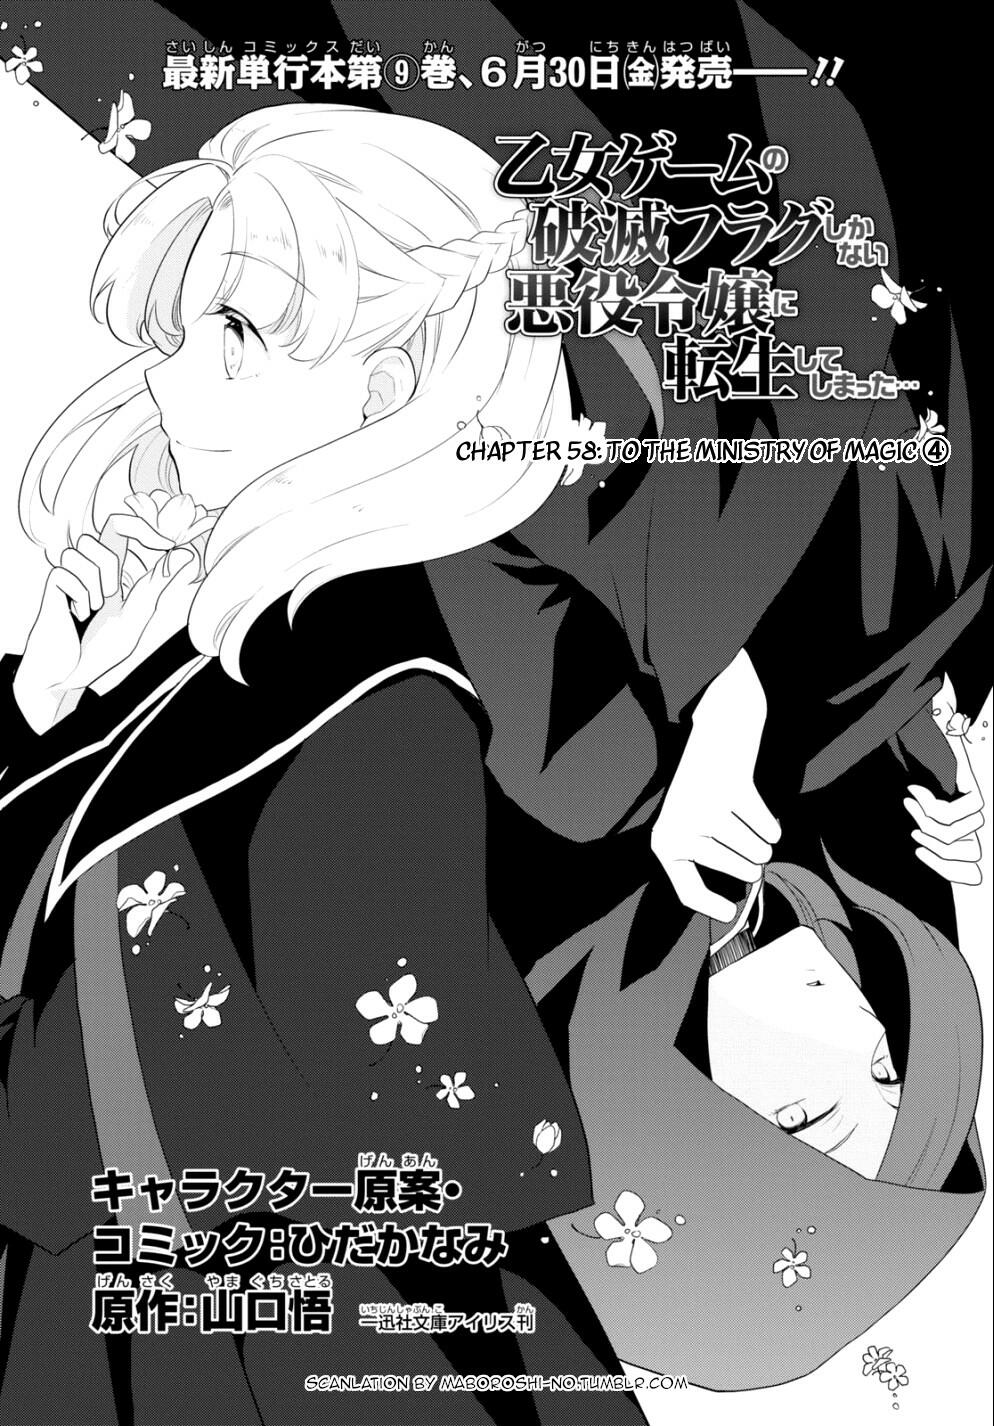 Read Otome Game No Hametsu Flag Shika Nai Akuyaku Reijou Ni Tensei Shite  Shimatta Chapter 58: To The Ministry Of Magic (4) on Mangakakalot